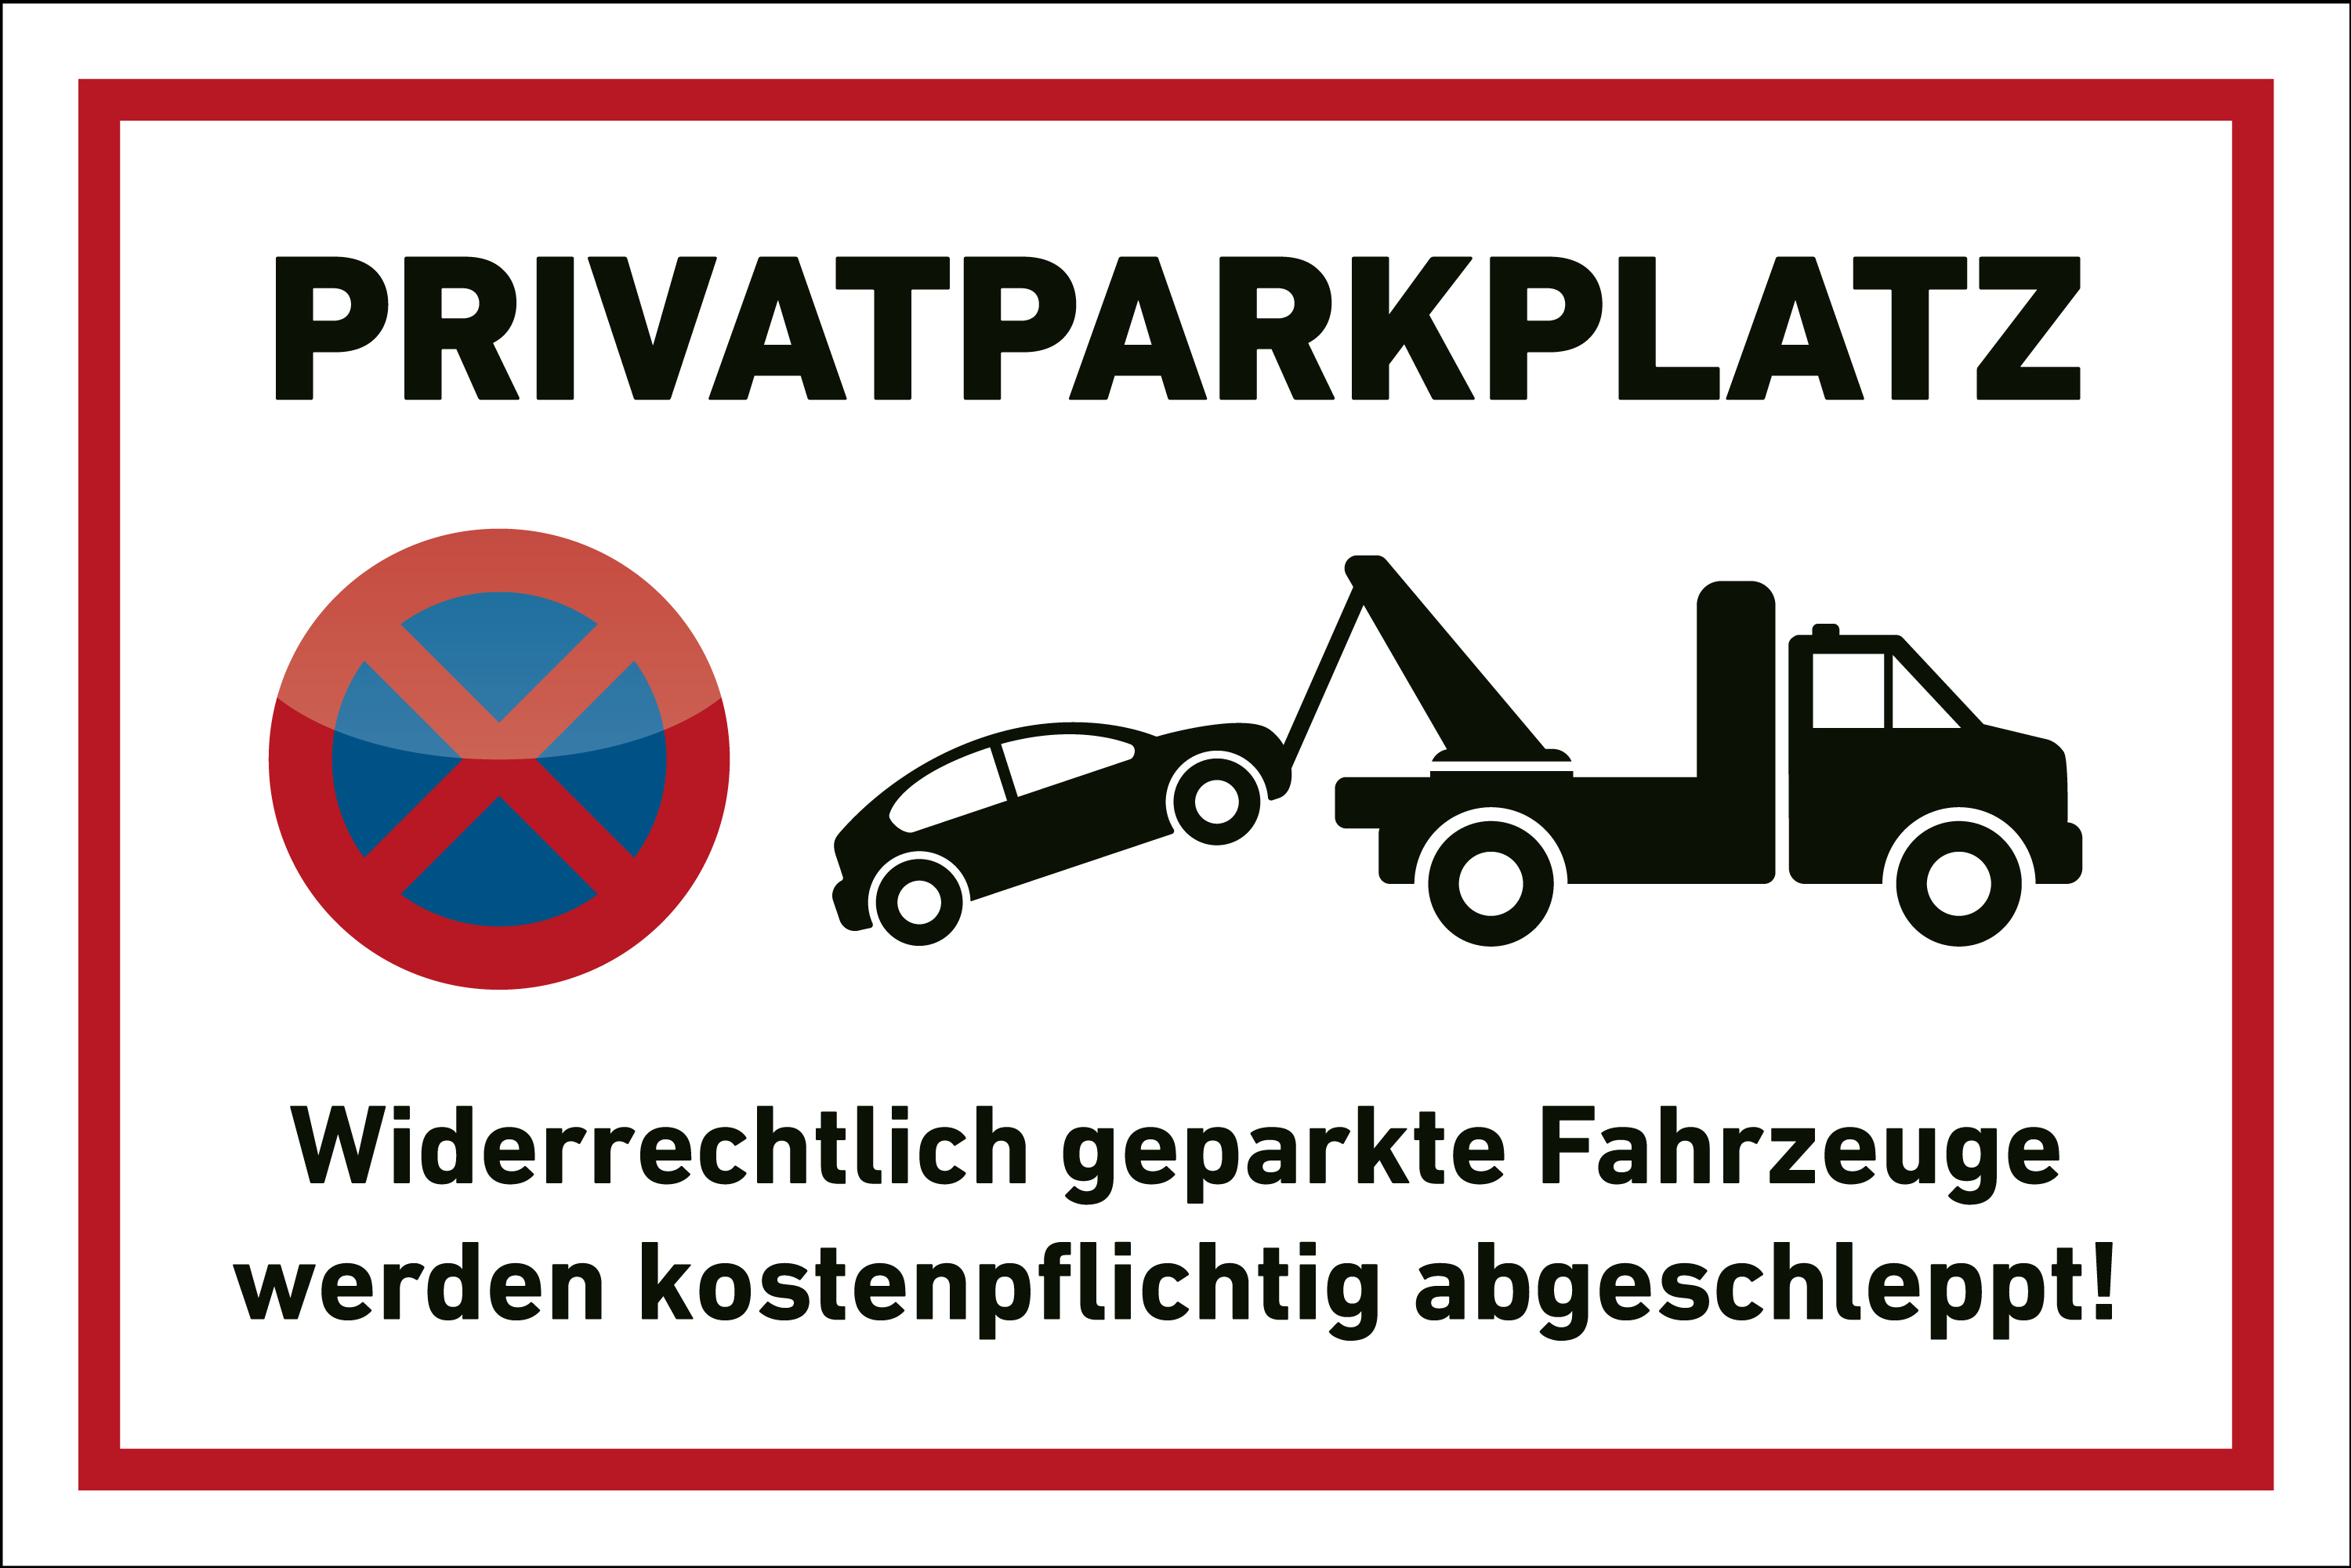 Parkplatz Schild "Privatparkplatz " Abschleppen Privatparkplatz